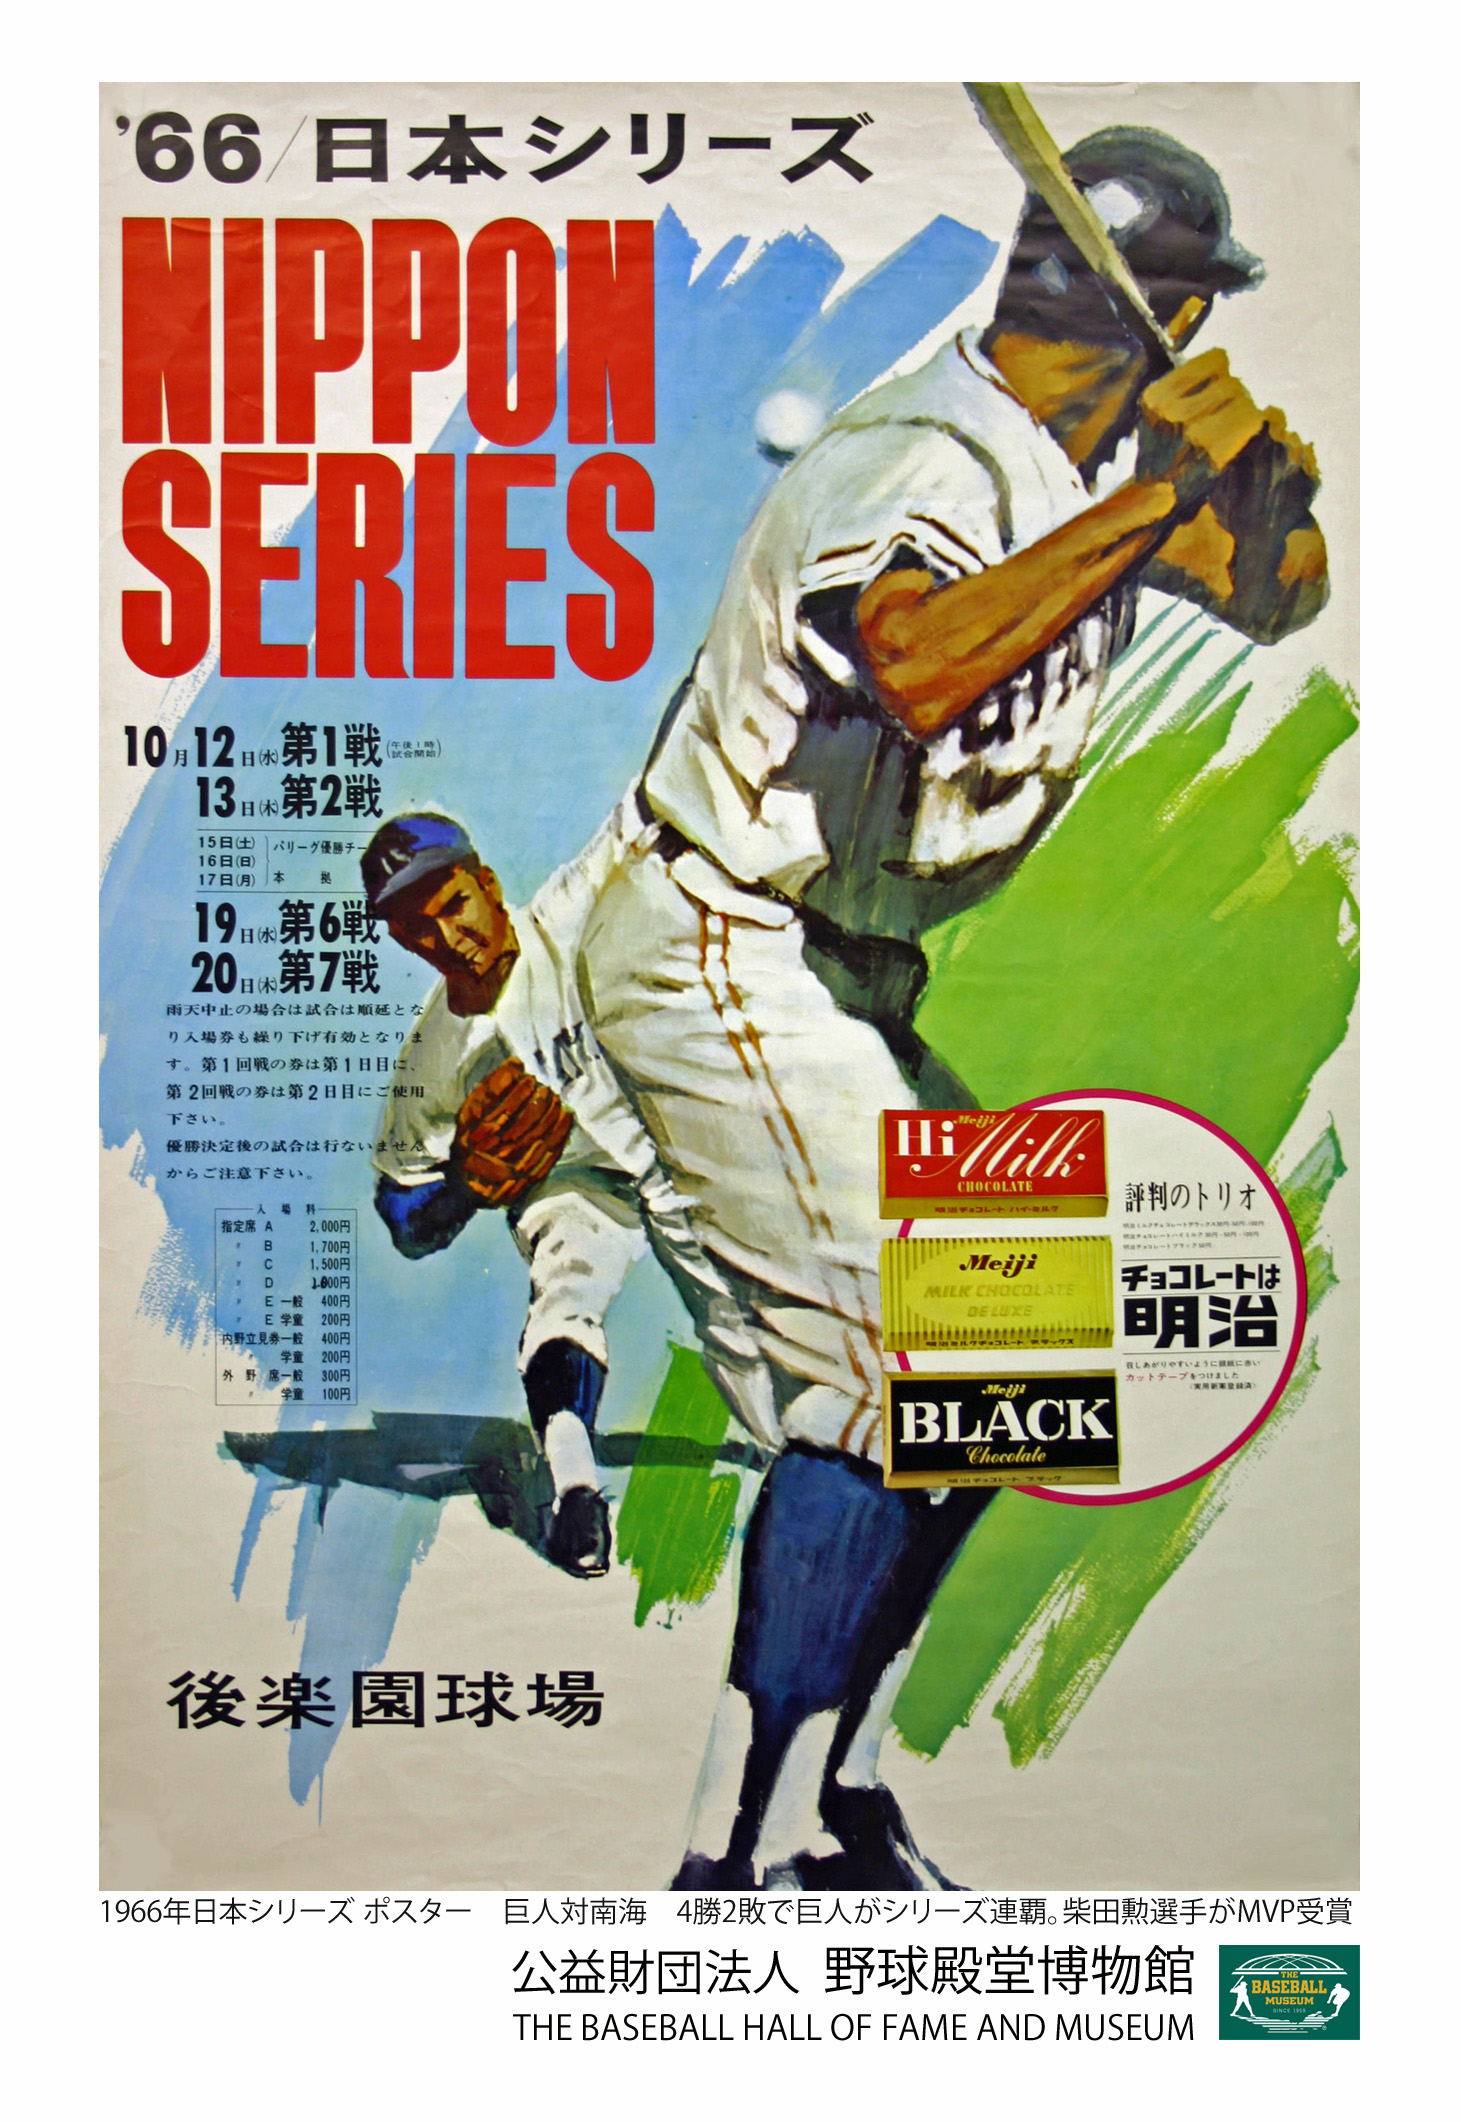 ポストカード 日本シリーズ 野球殿堂博物館